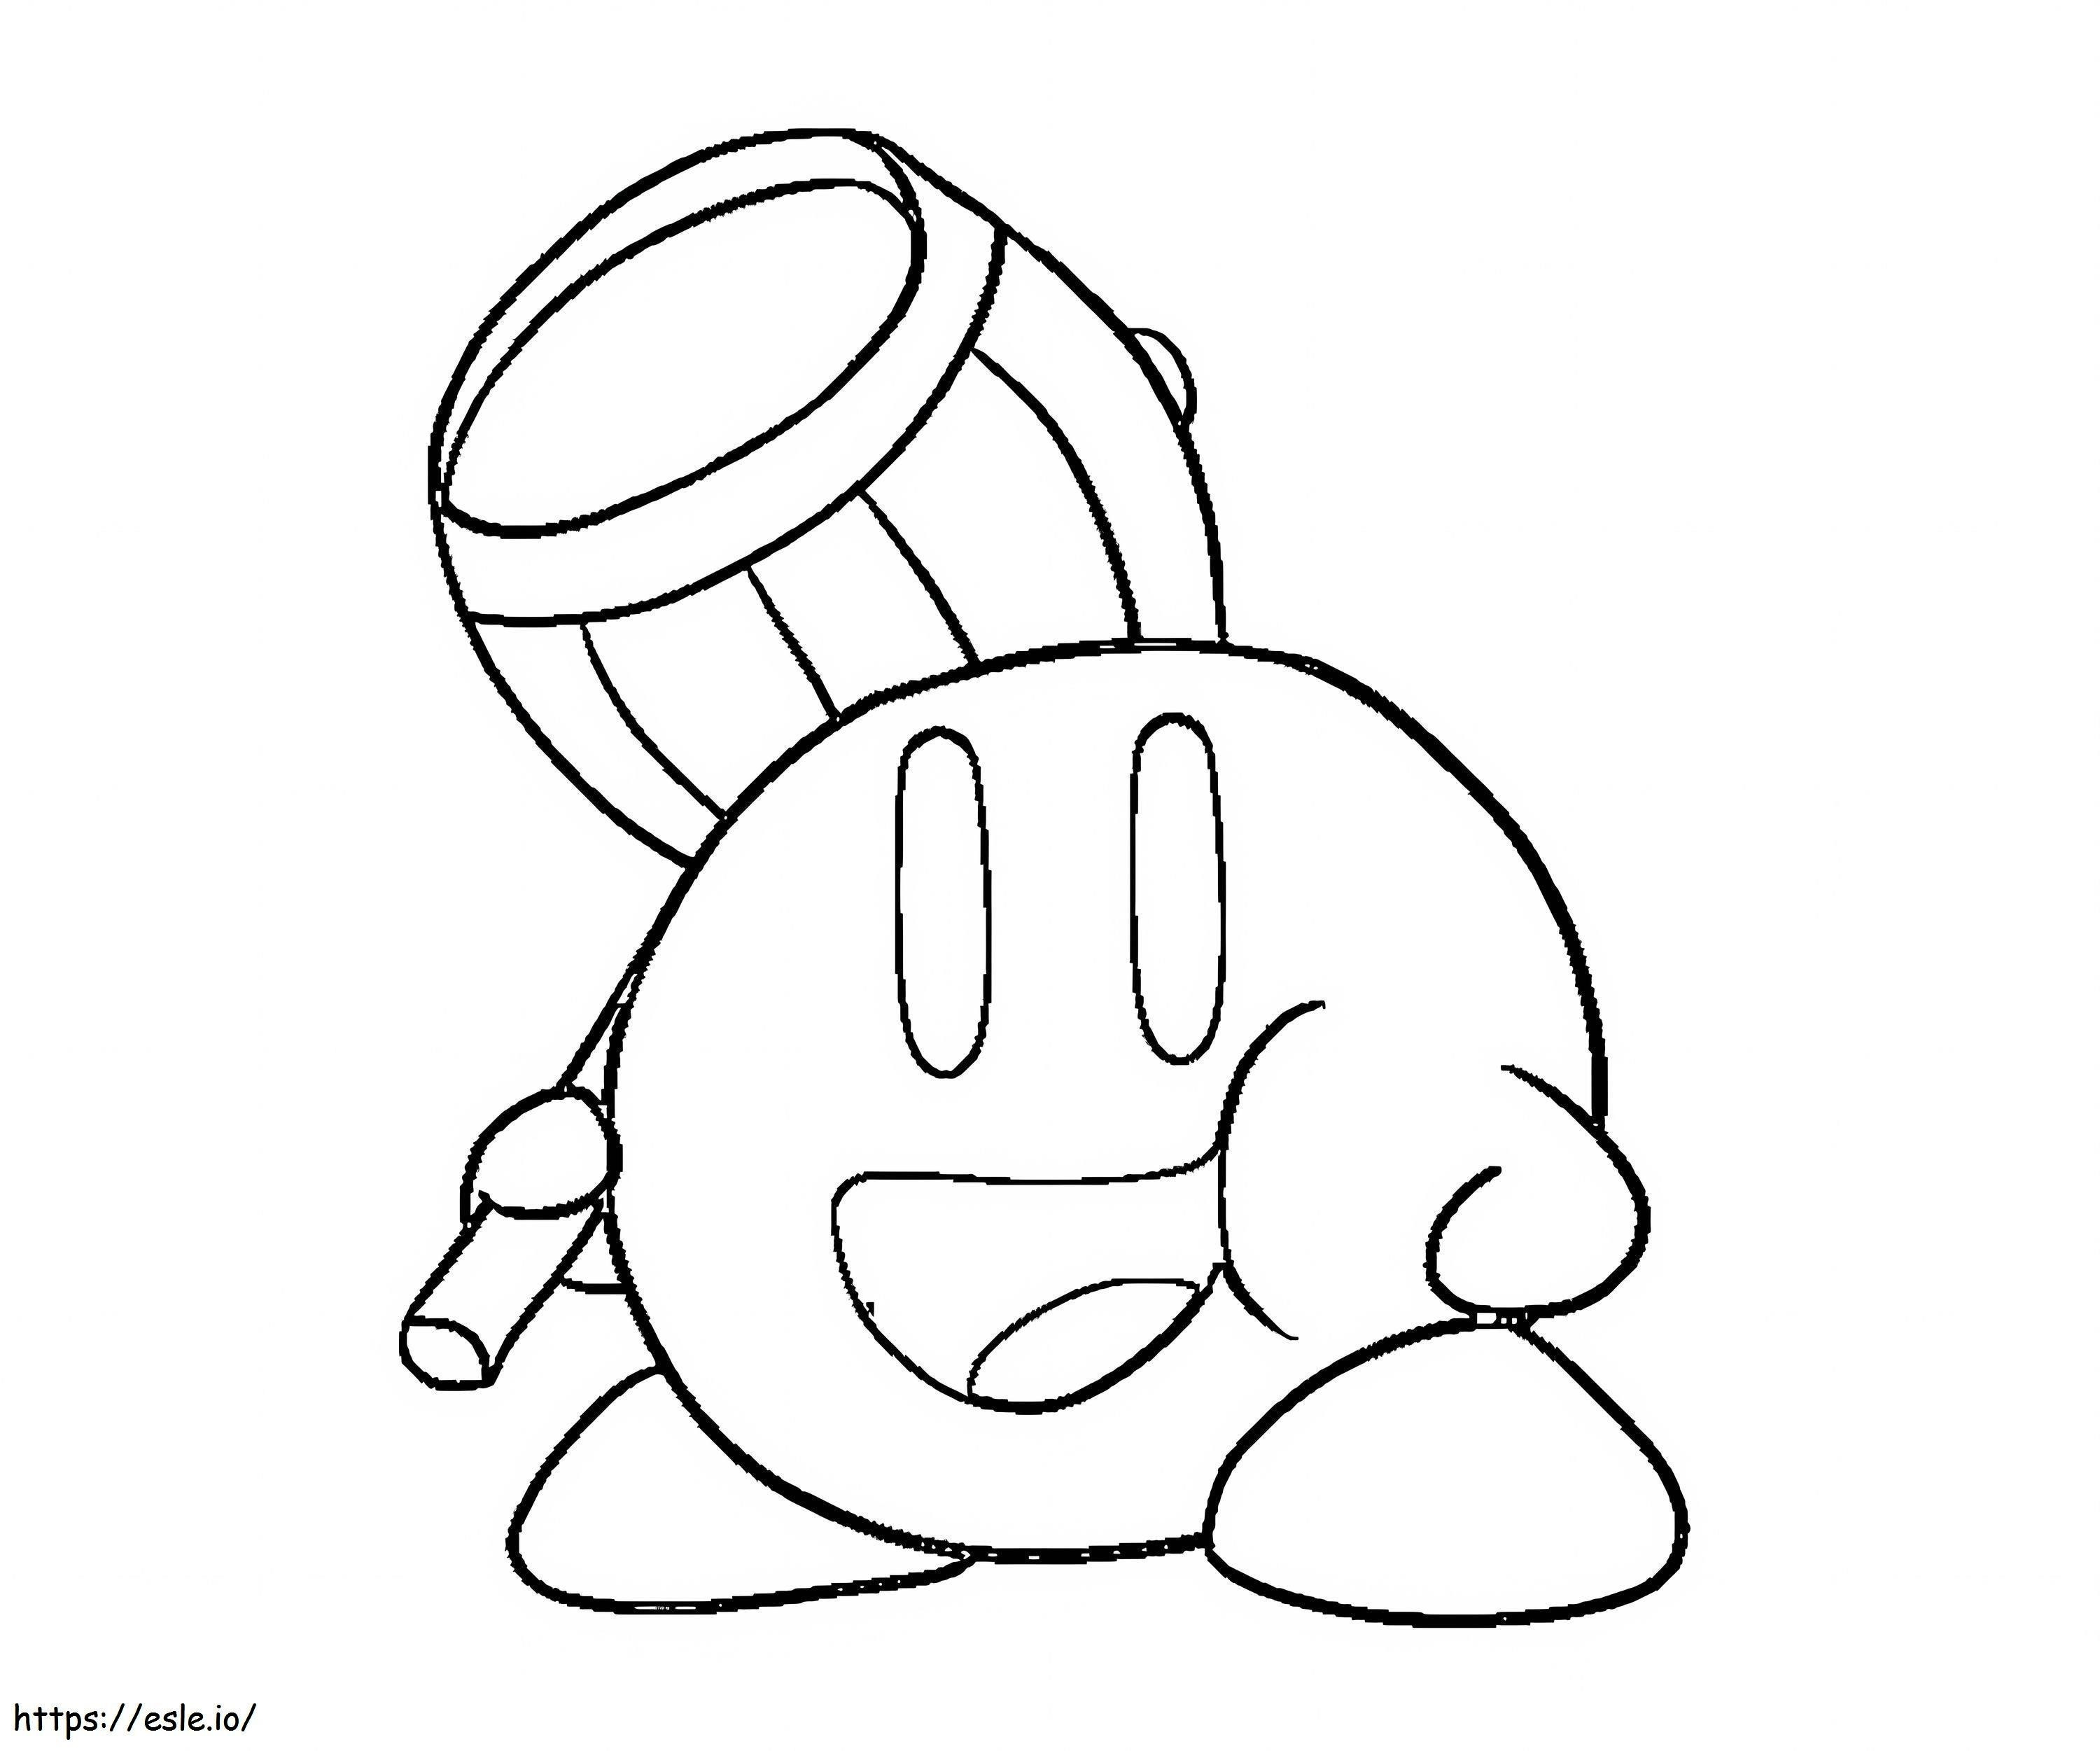 Narysuj Kirby trzymającego młotek kolorowanka